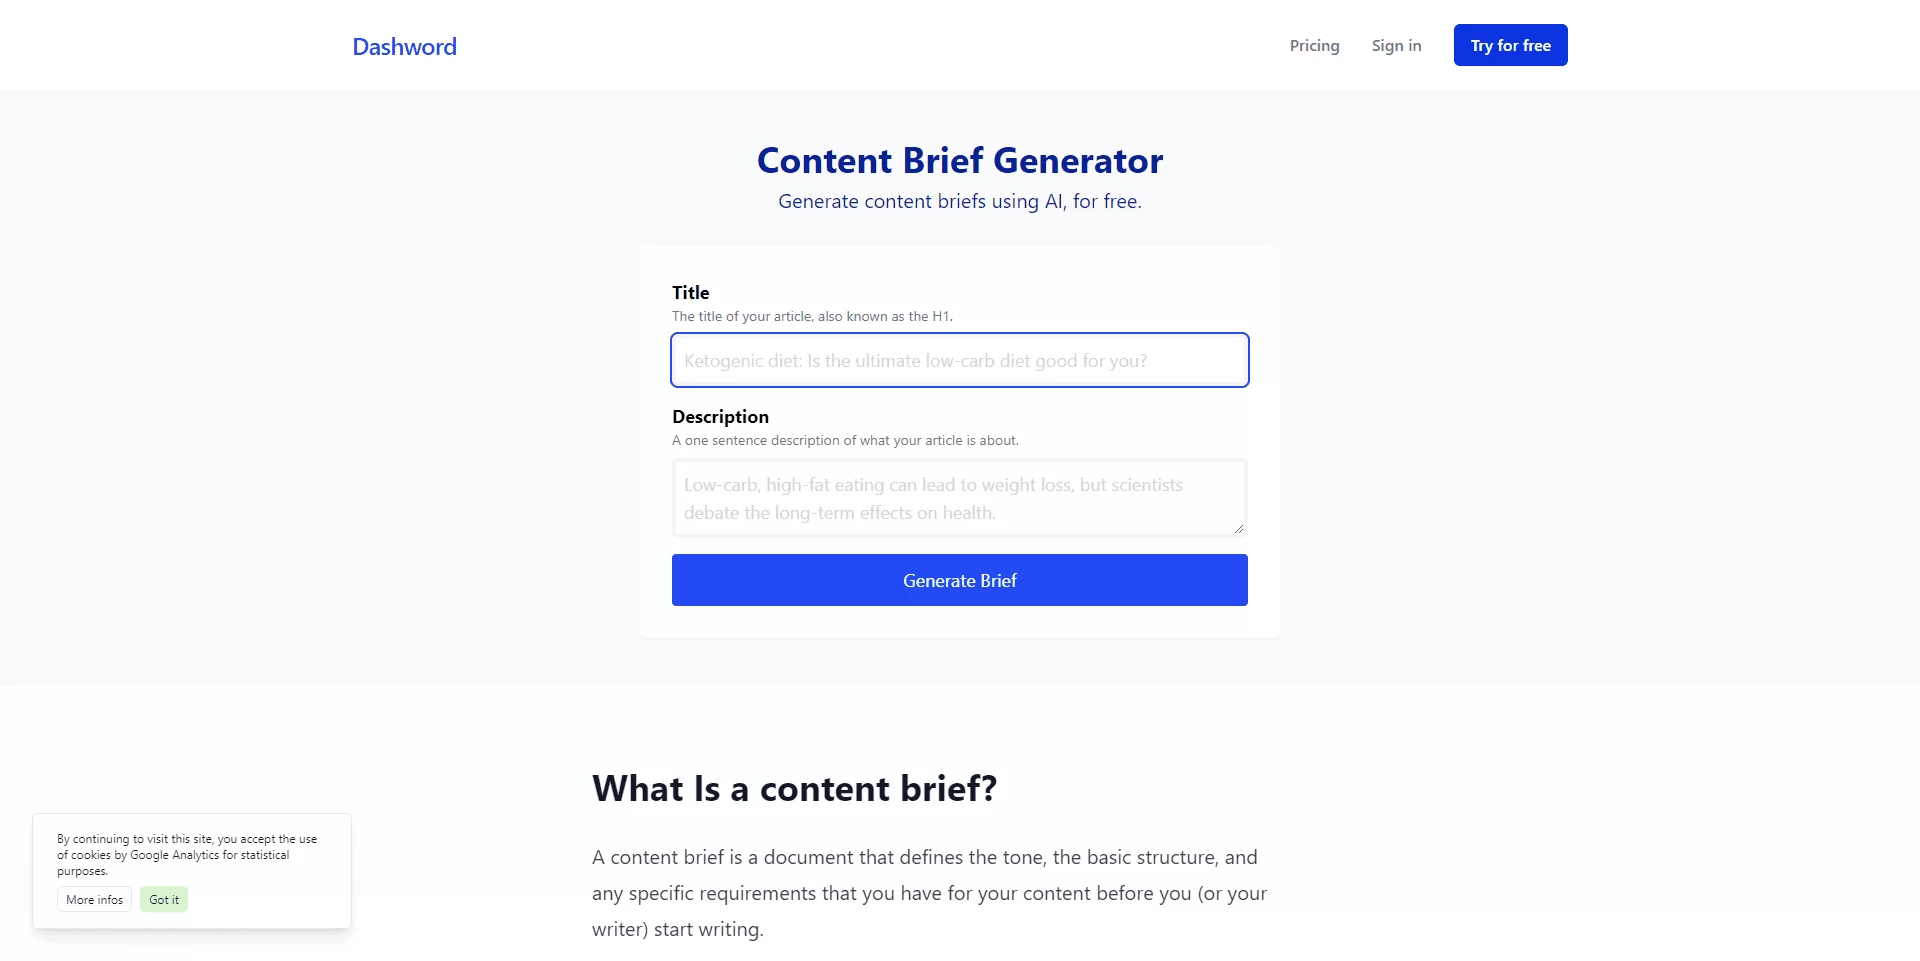 Content brief generator